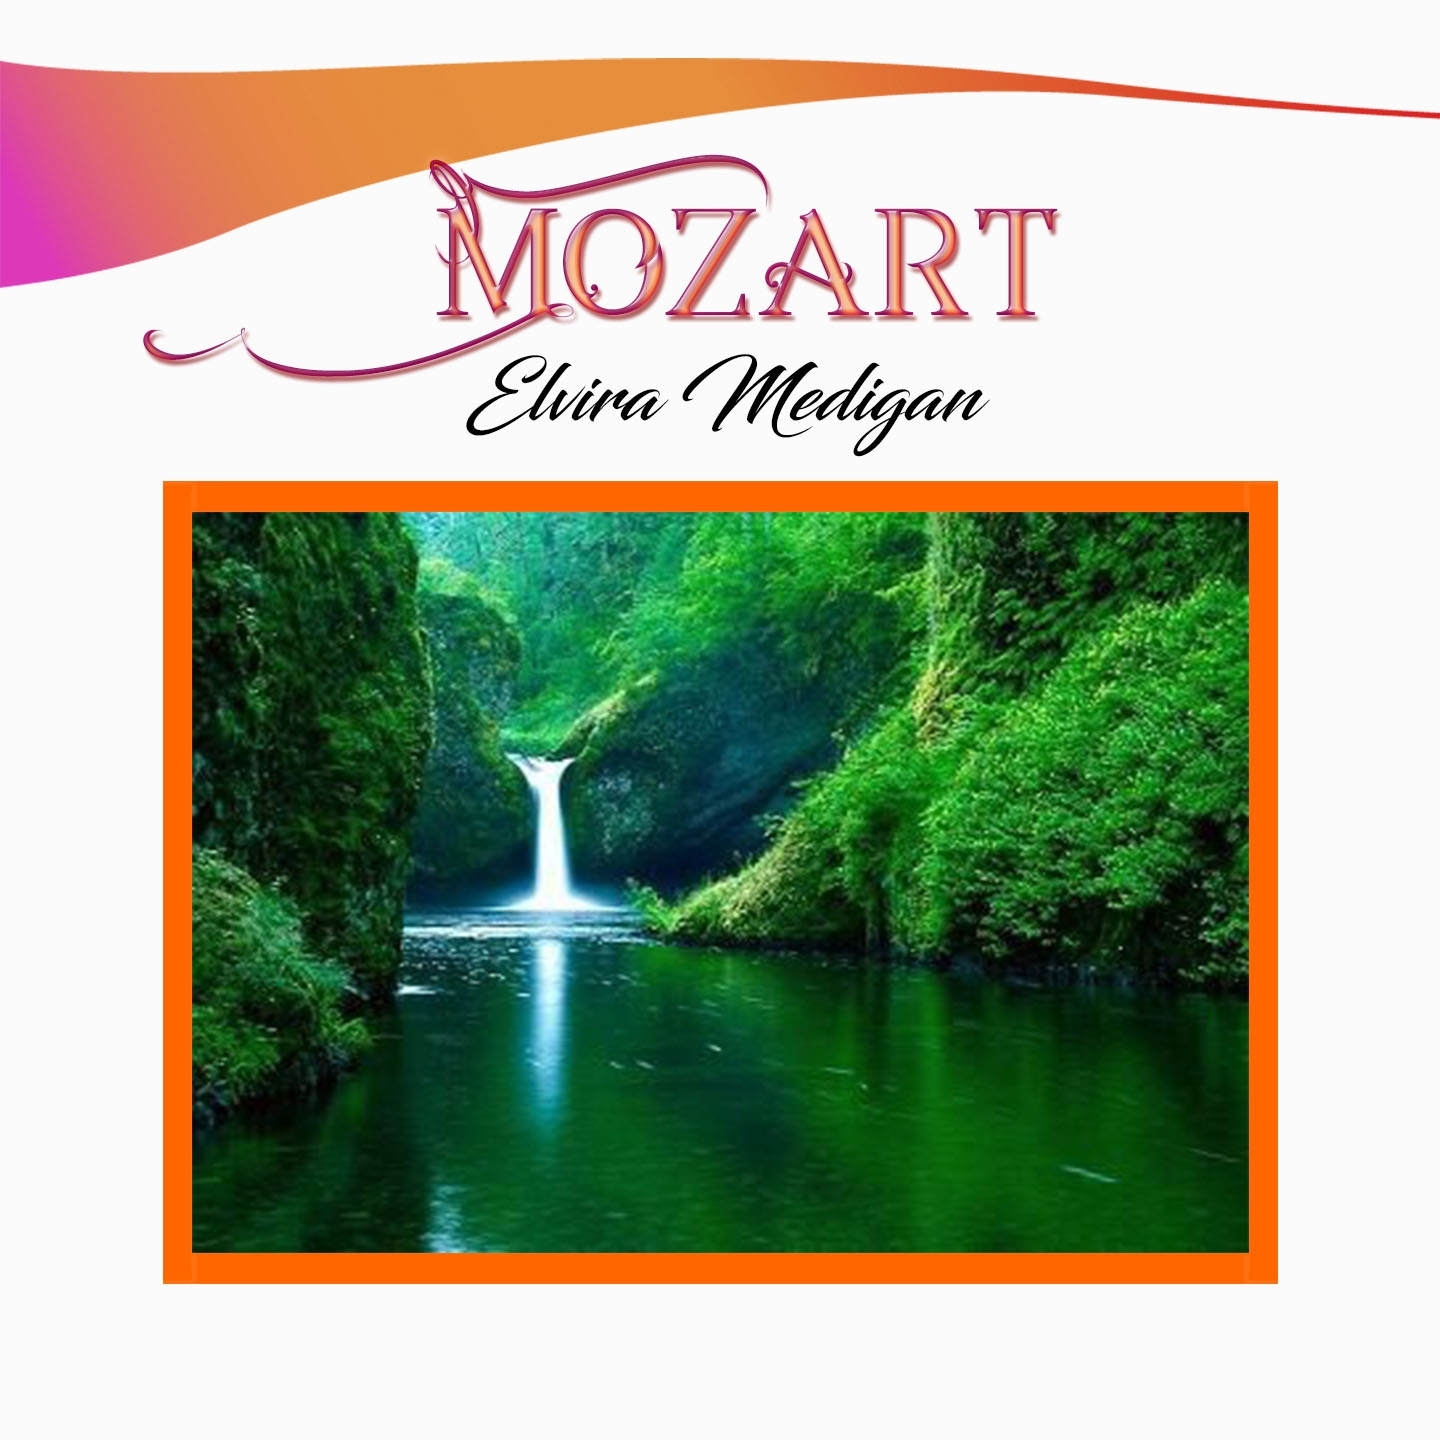 Mozart, Elvira Medigan